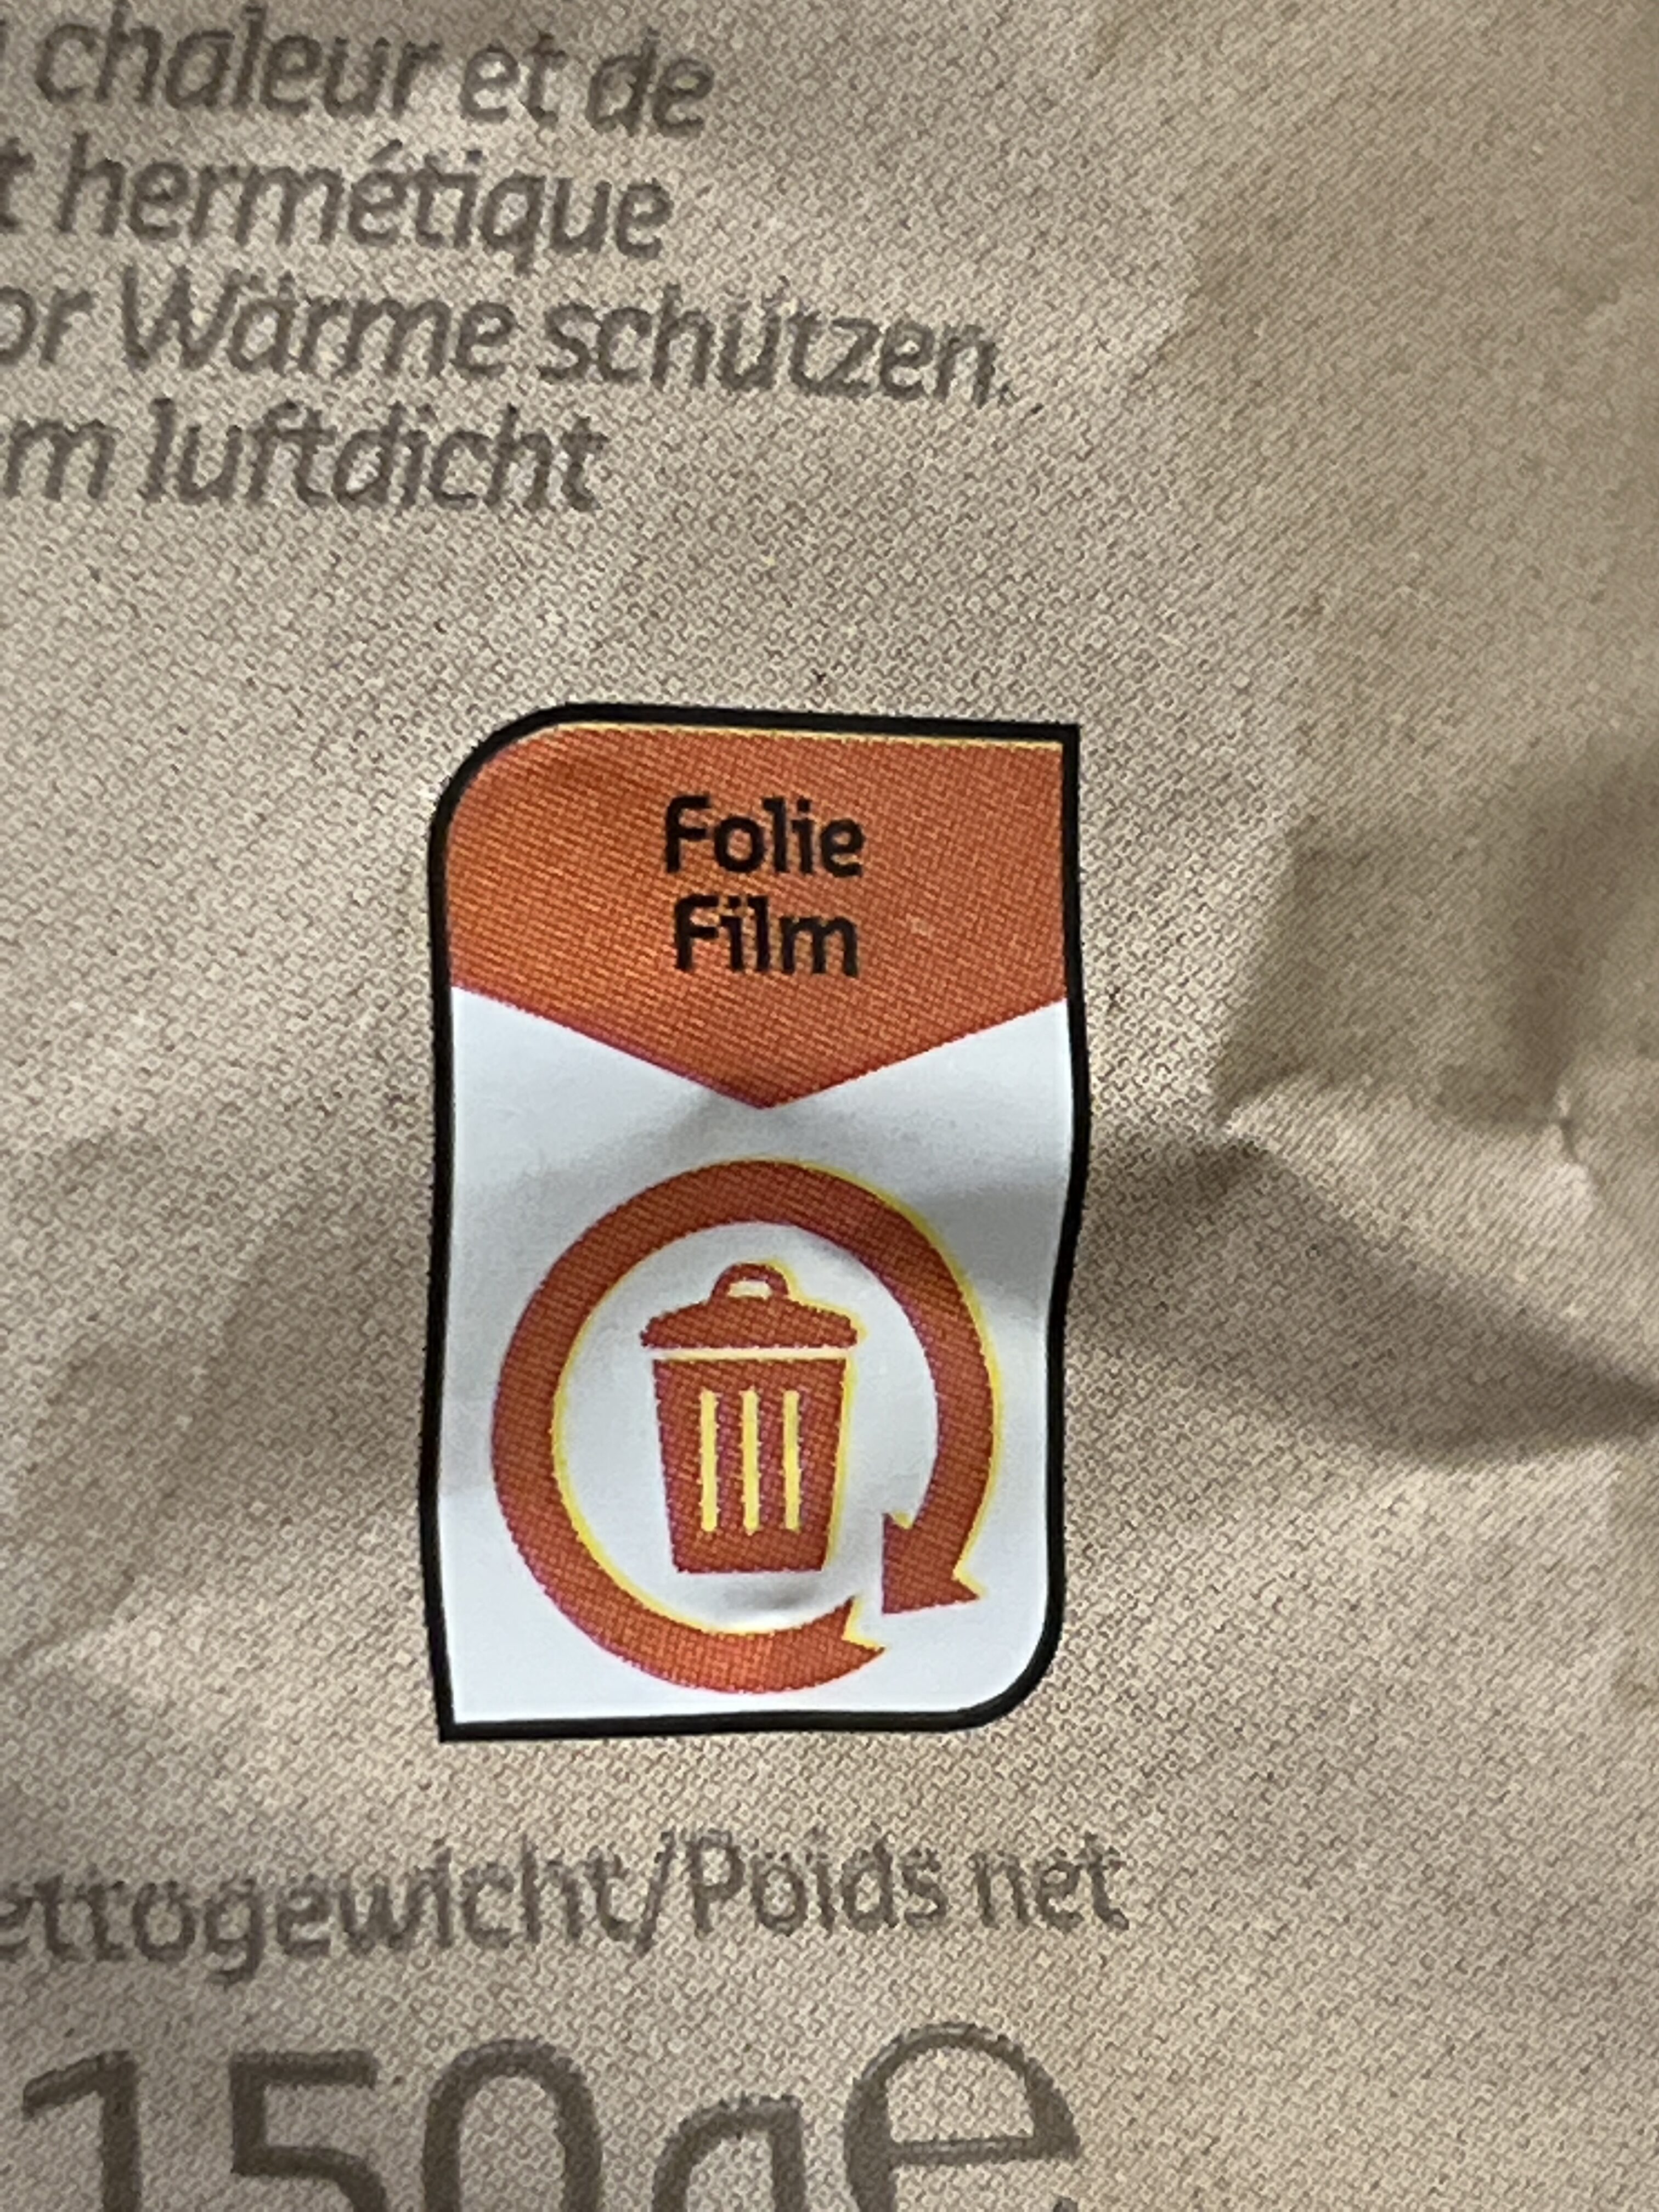 Chips cuites à la main - Instruction de recyclage et/ou informations d'emballage - fr